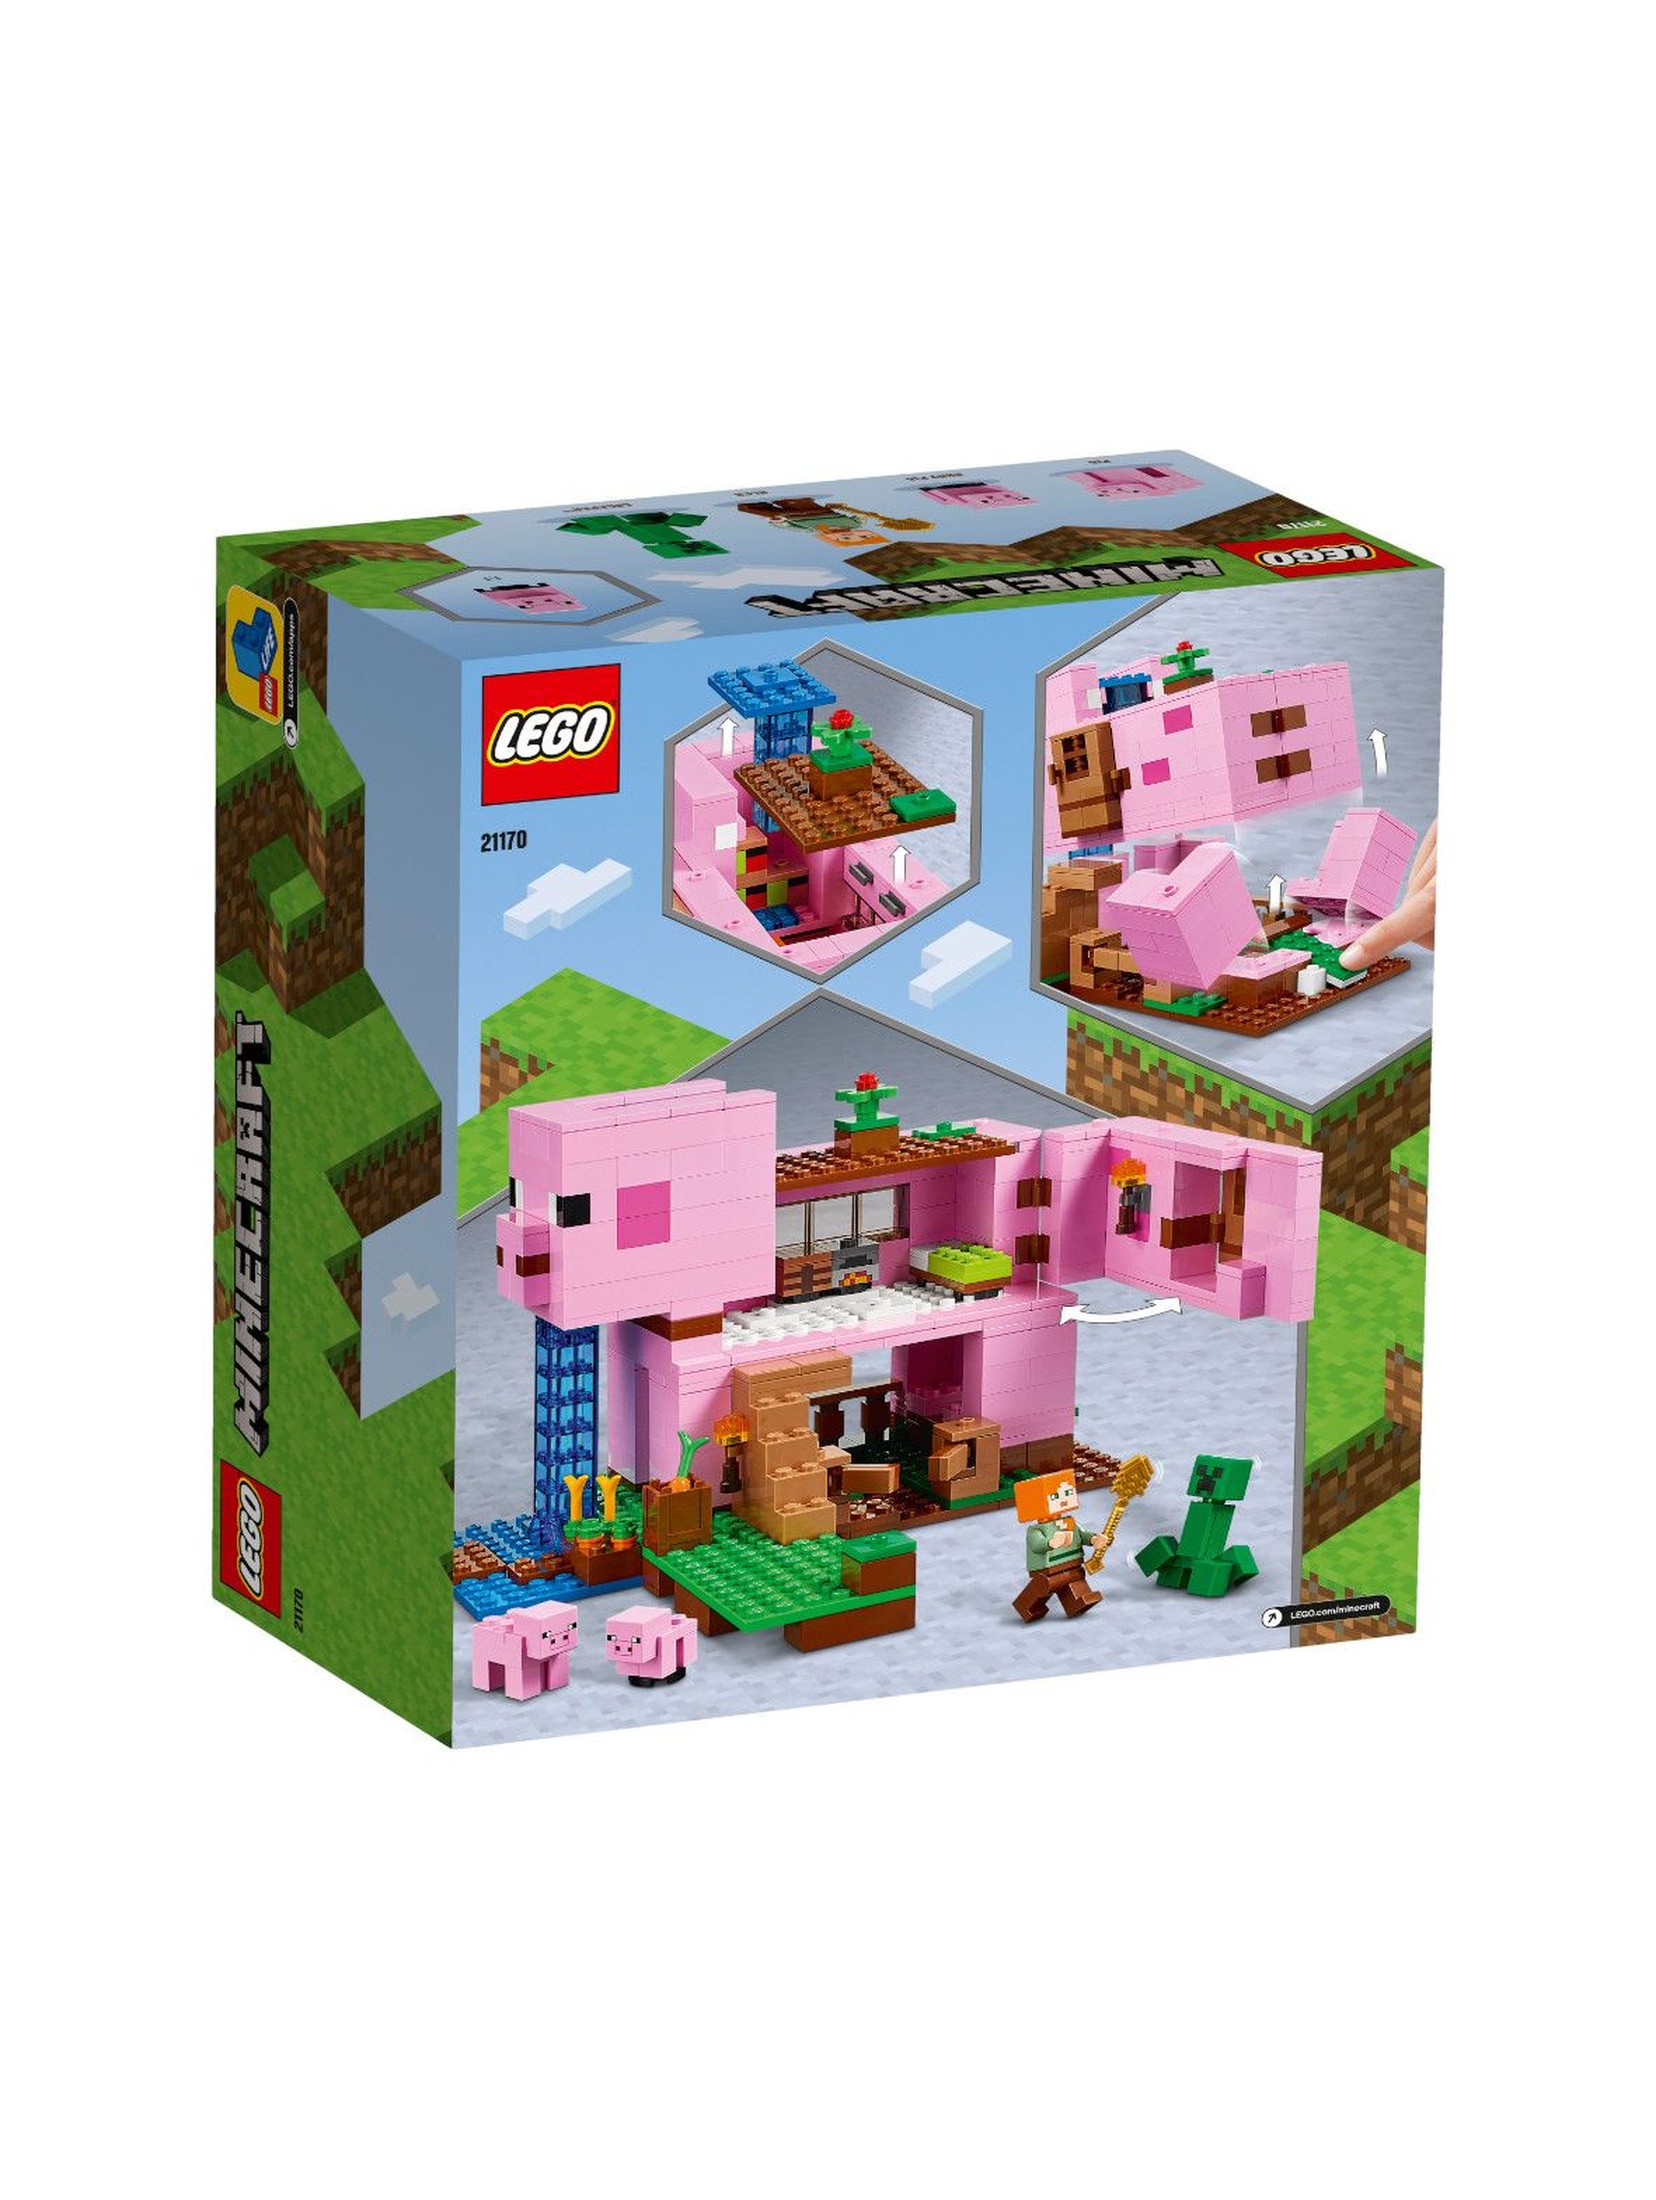 LEGO Minecraft - Dom w kształcie świni - 490 el